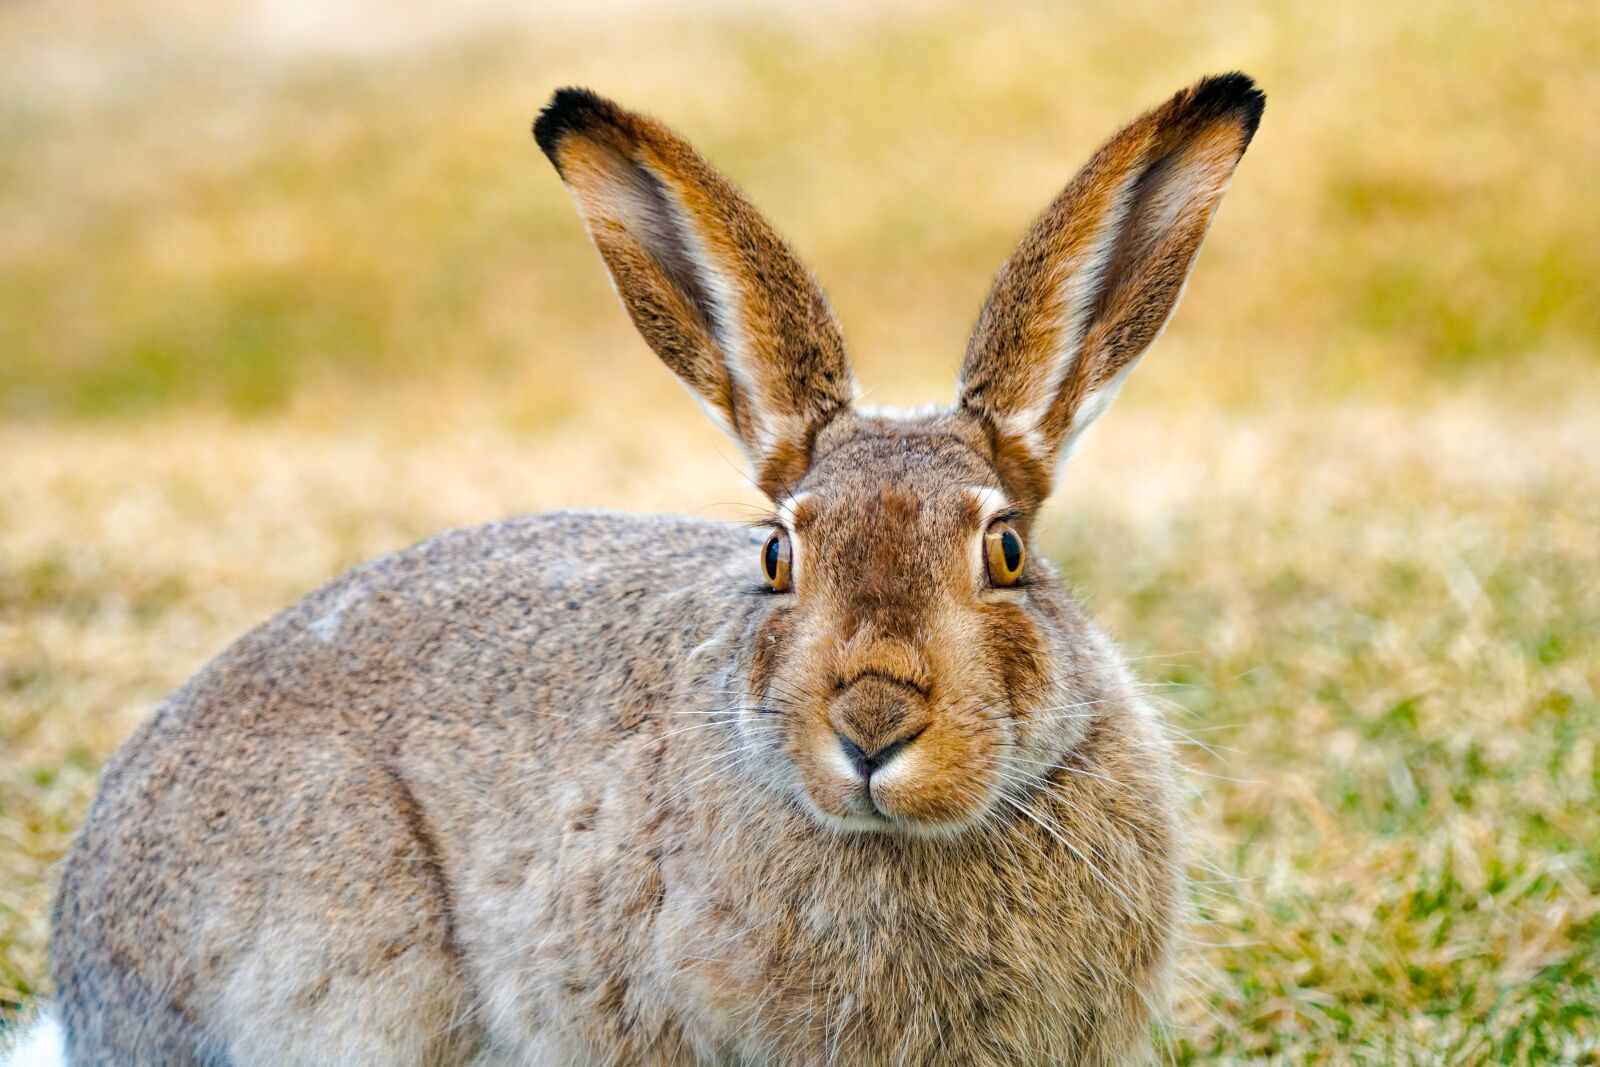 Sony a6500 sample photo. Jackrabbit, hare, rabbit photography